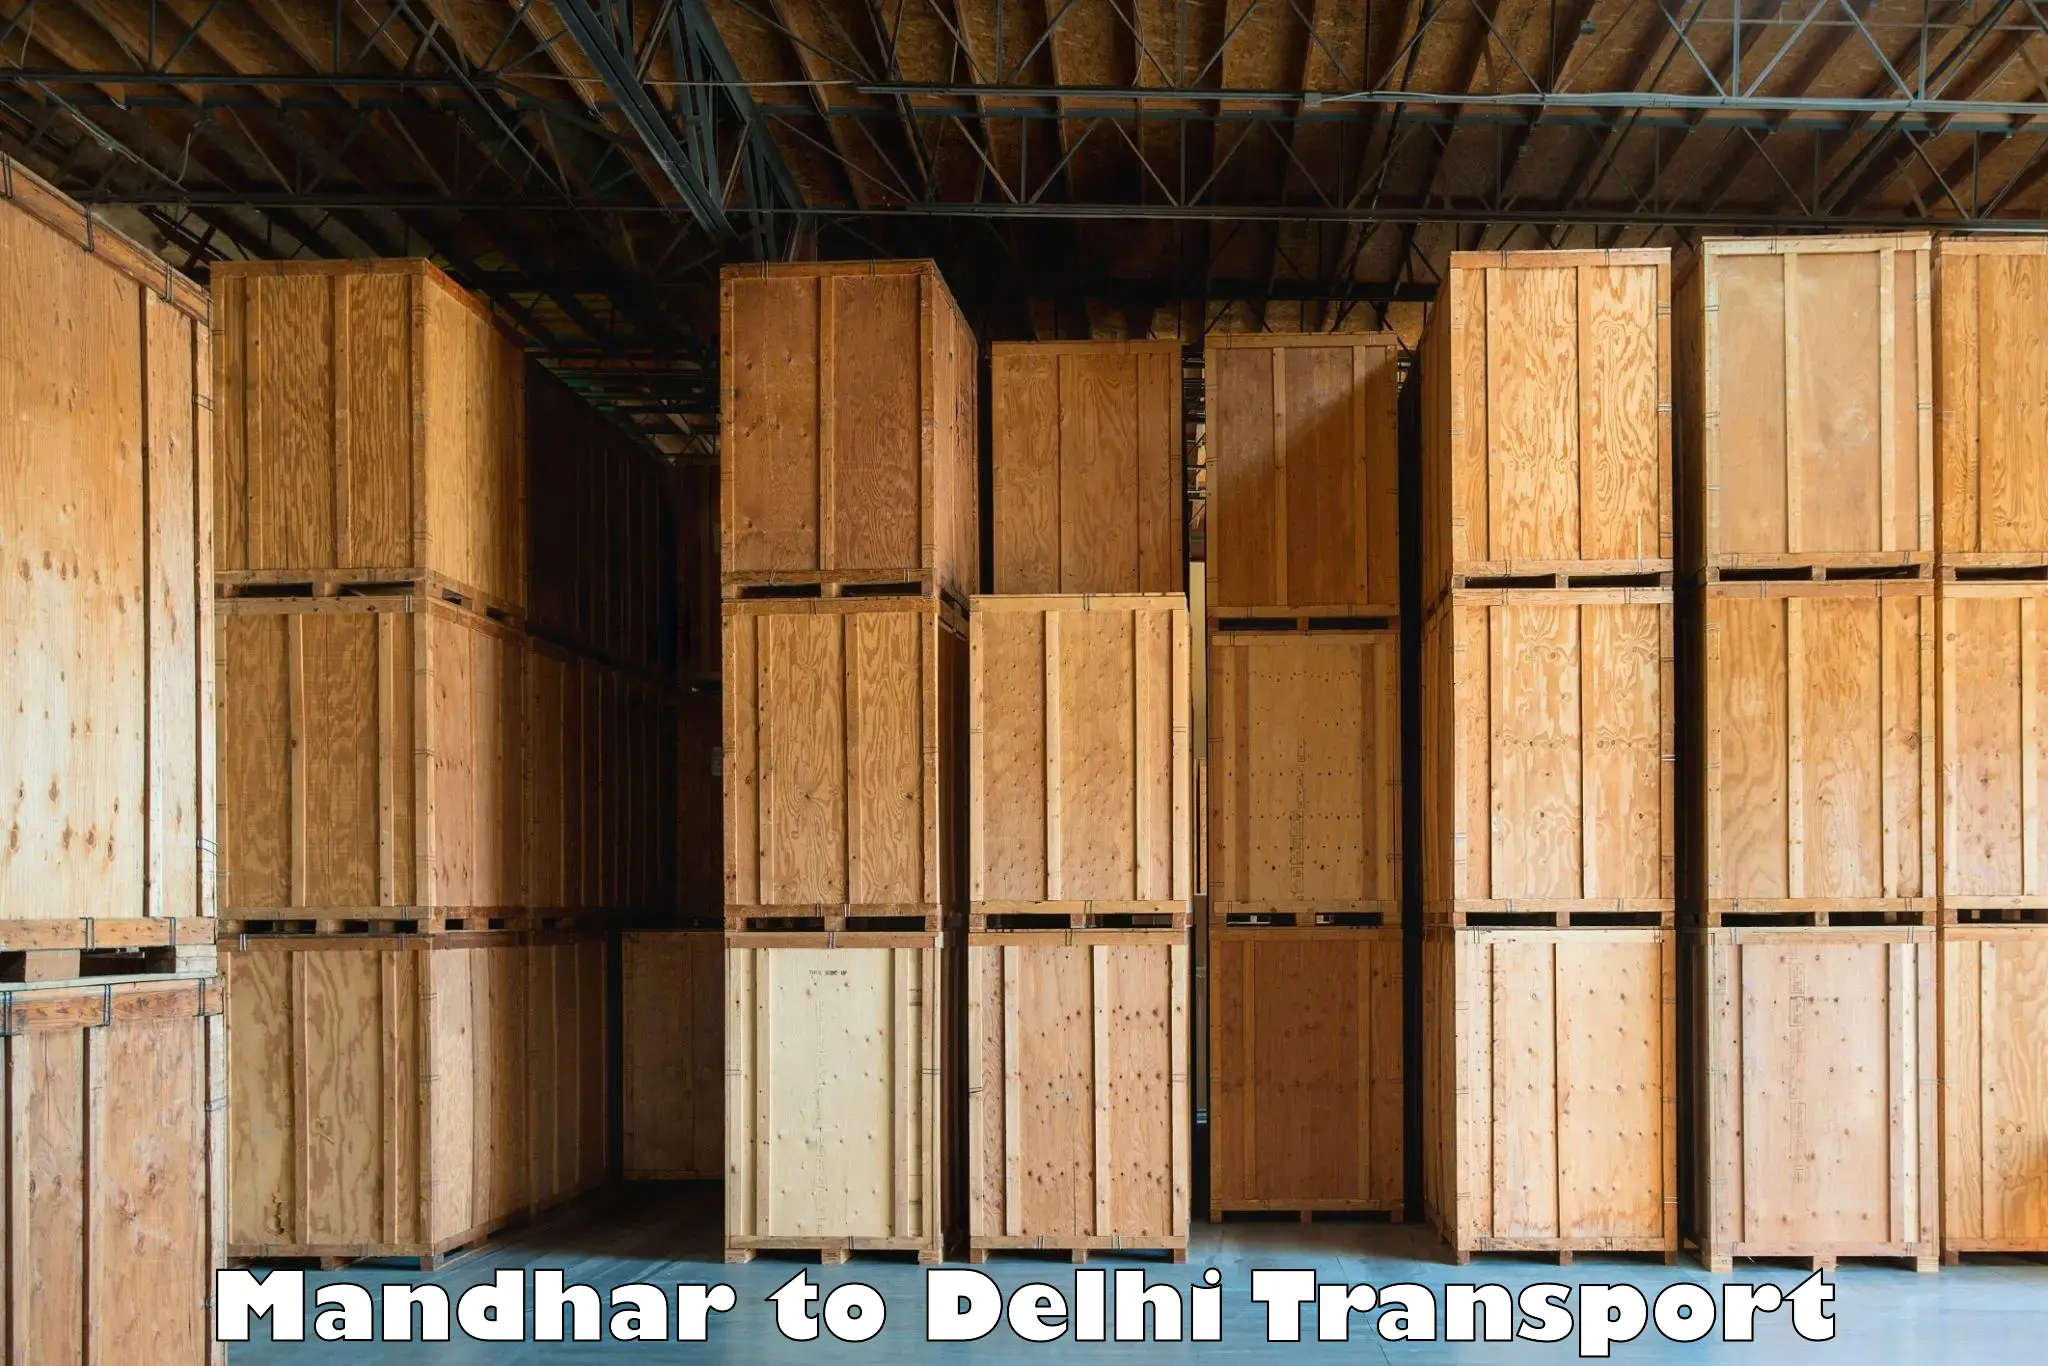 Express transport services Mandhar to East Delhi